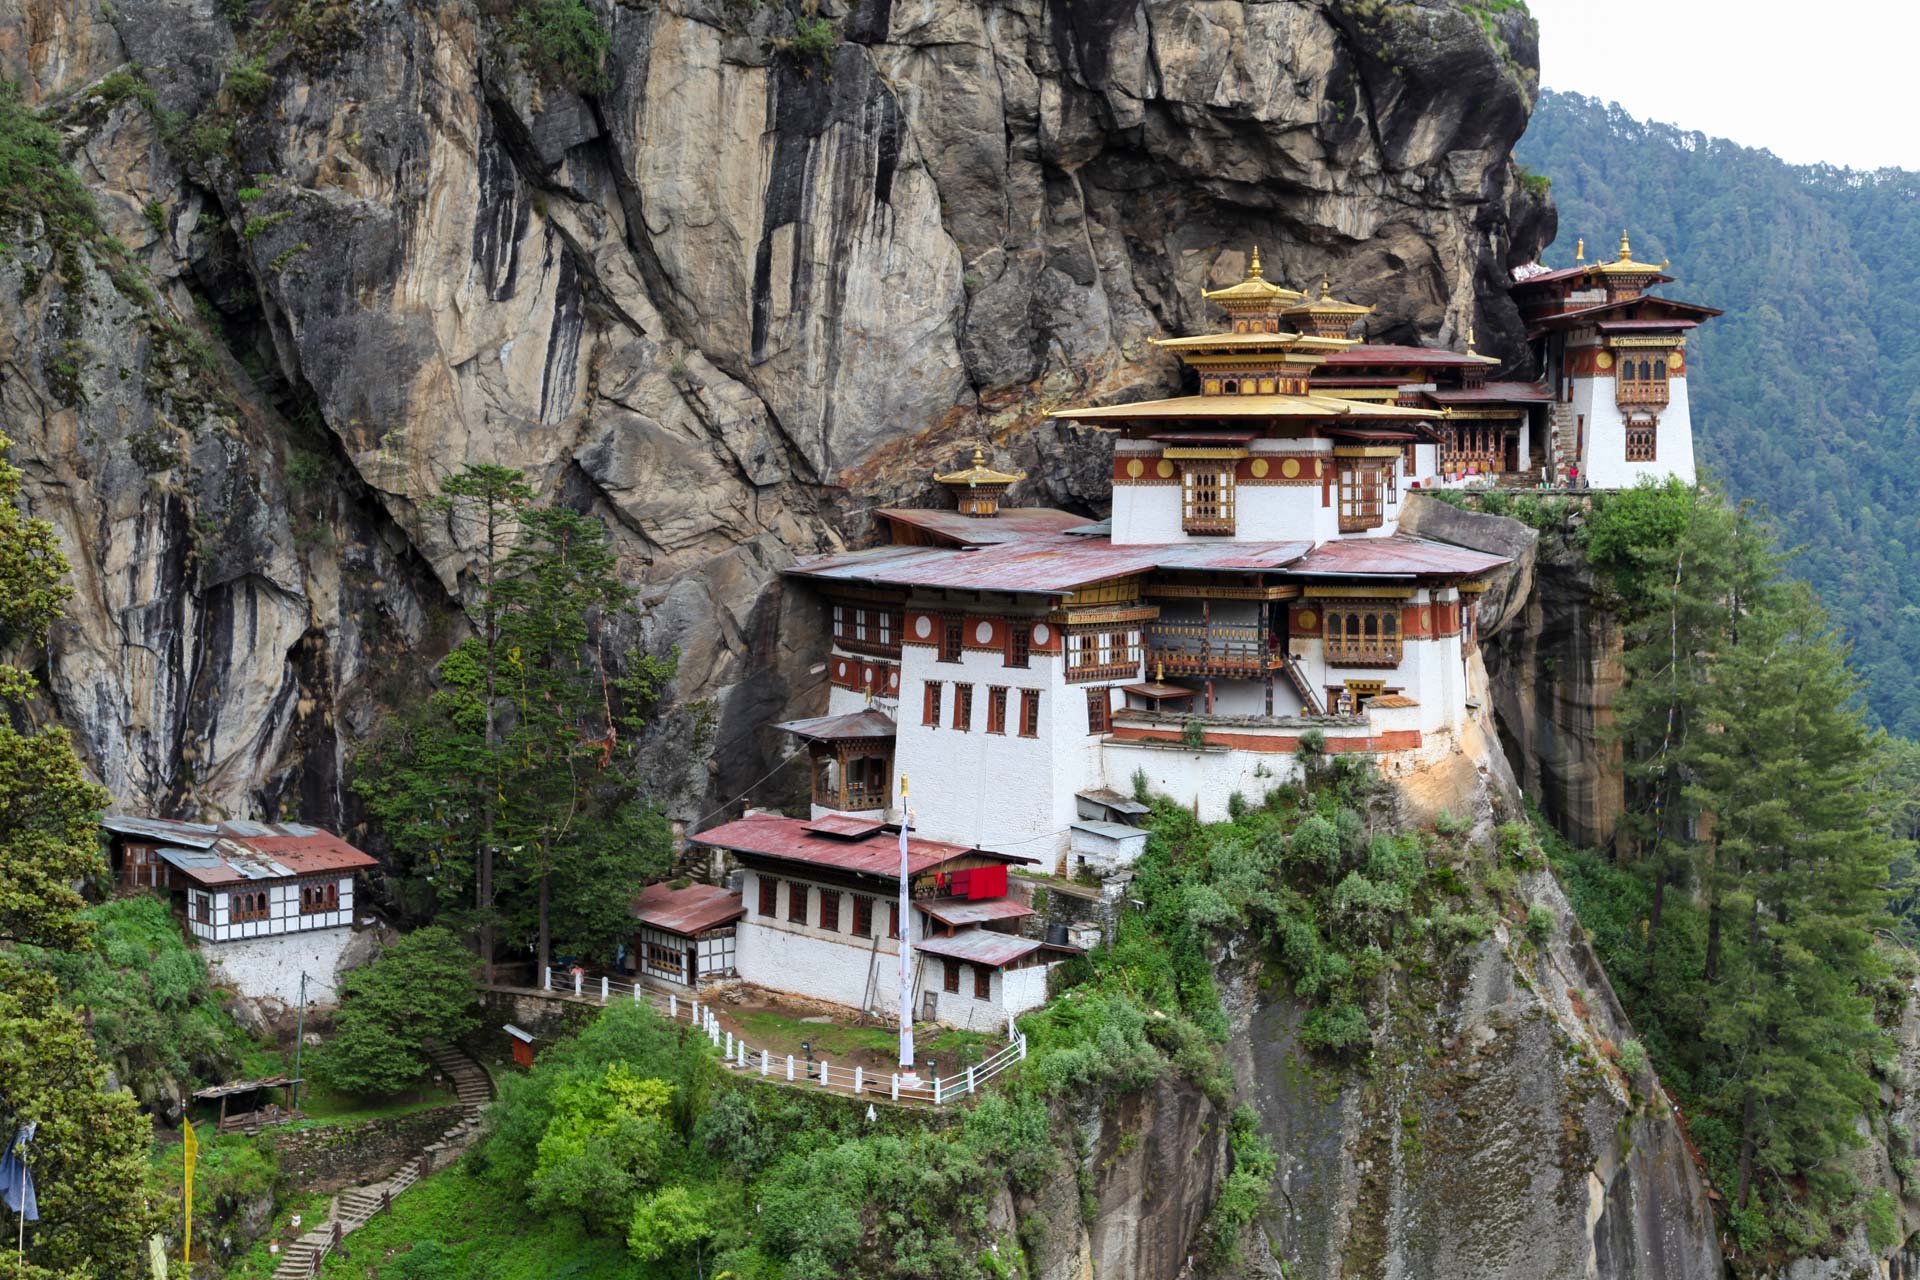 聖地タクツァン僧院 ブータン観光ならGNH 一人旅でもツアーでも